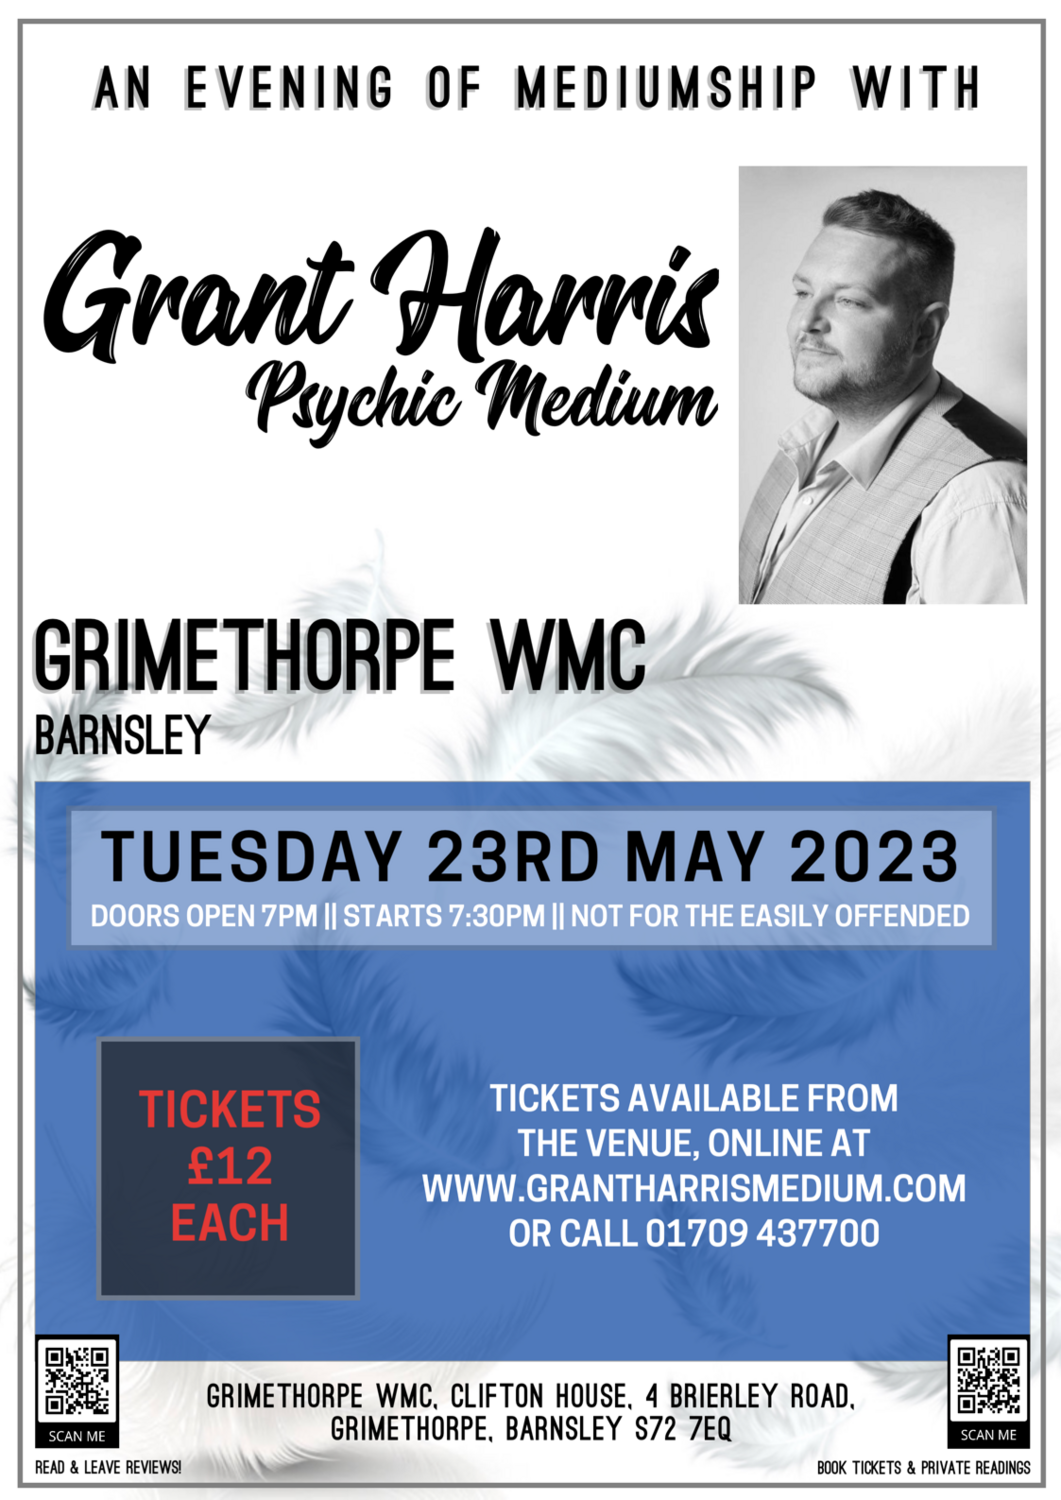 Grimethorpe WMC, Barnsley, Tuesday 23rd May 2023